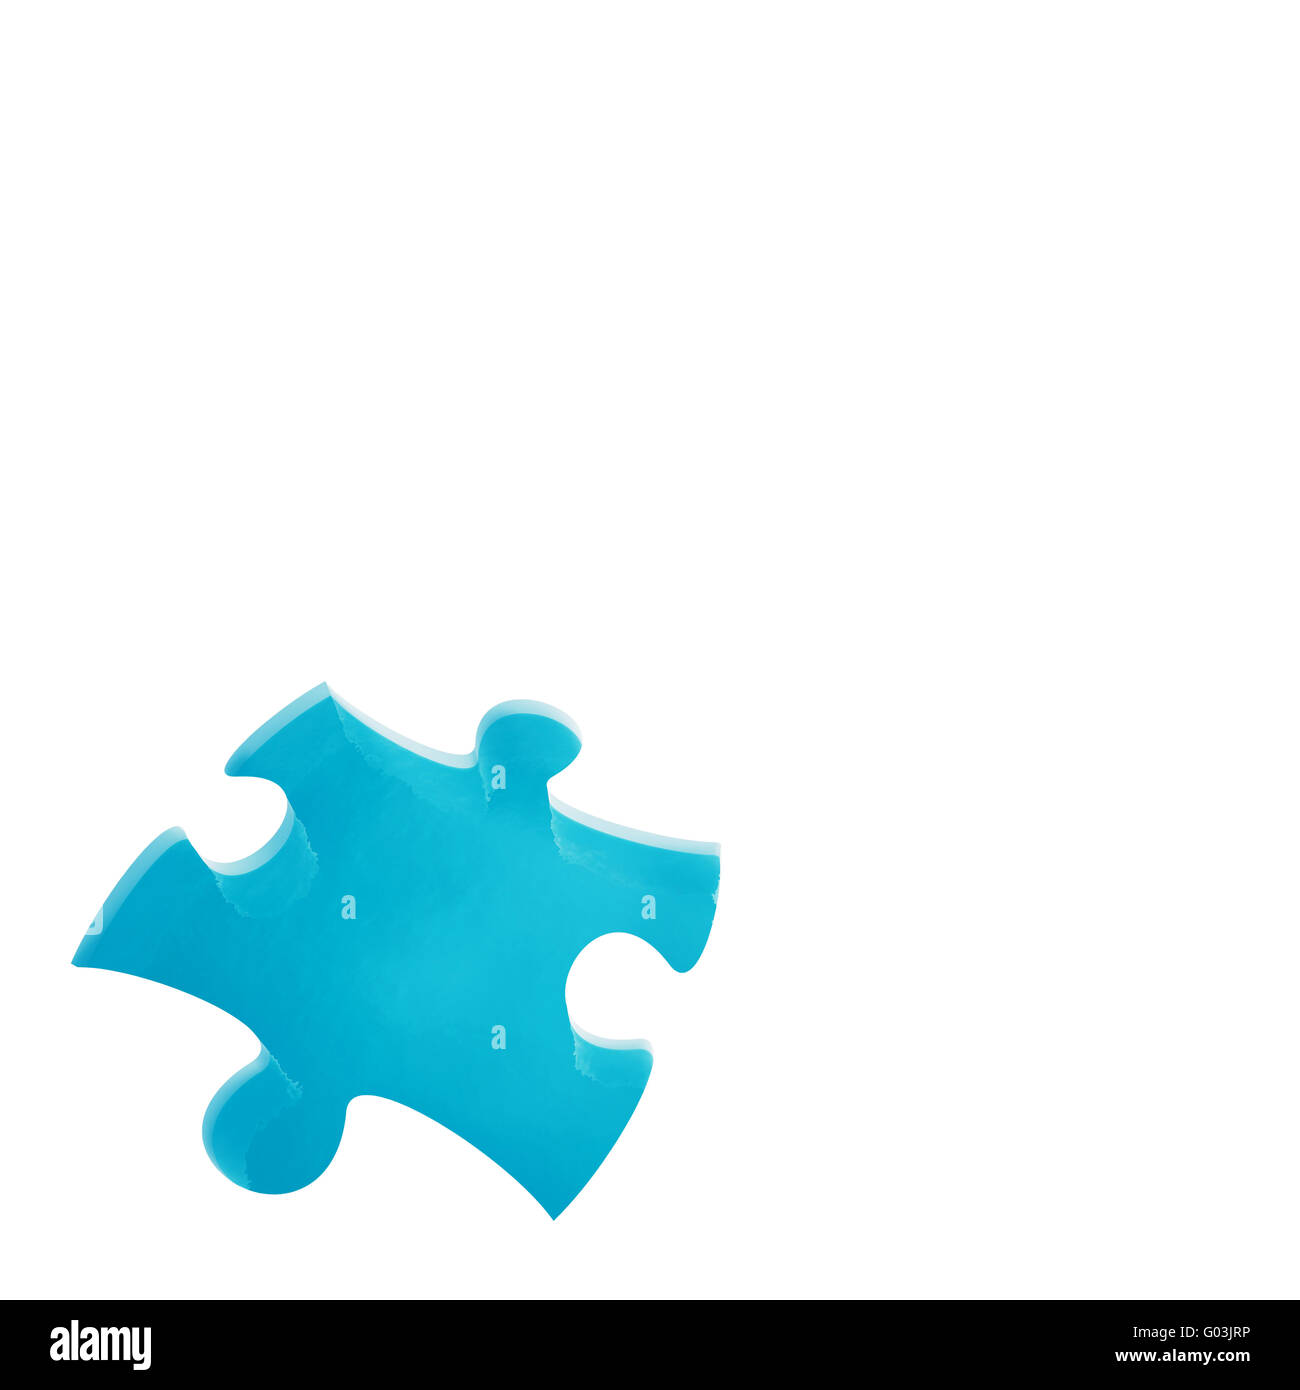 Piscine avec de l'eau bleu transparente comme un puzzle Banque D'Images